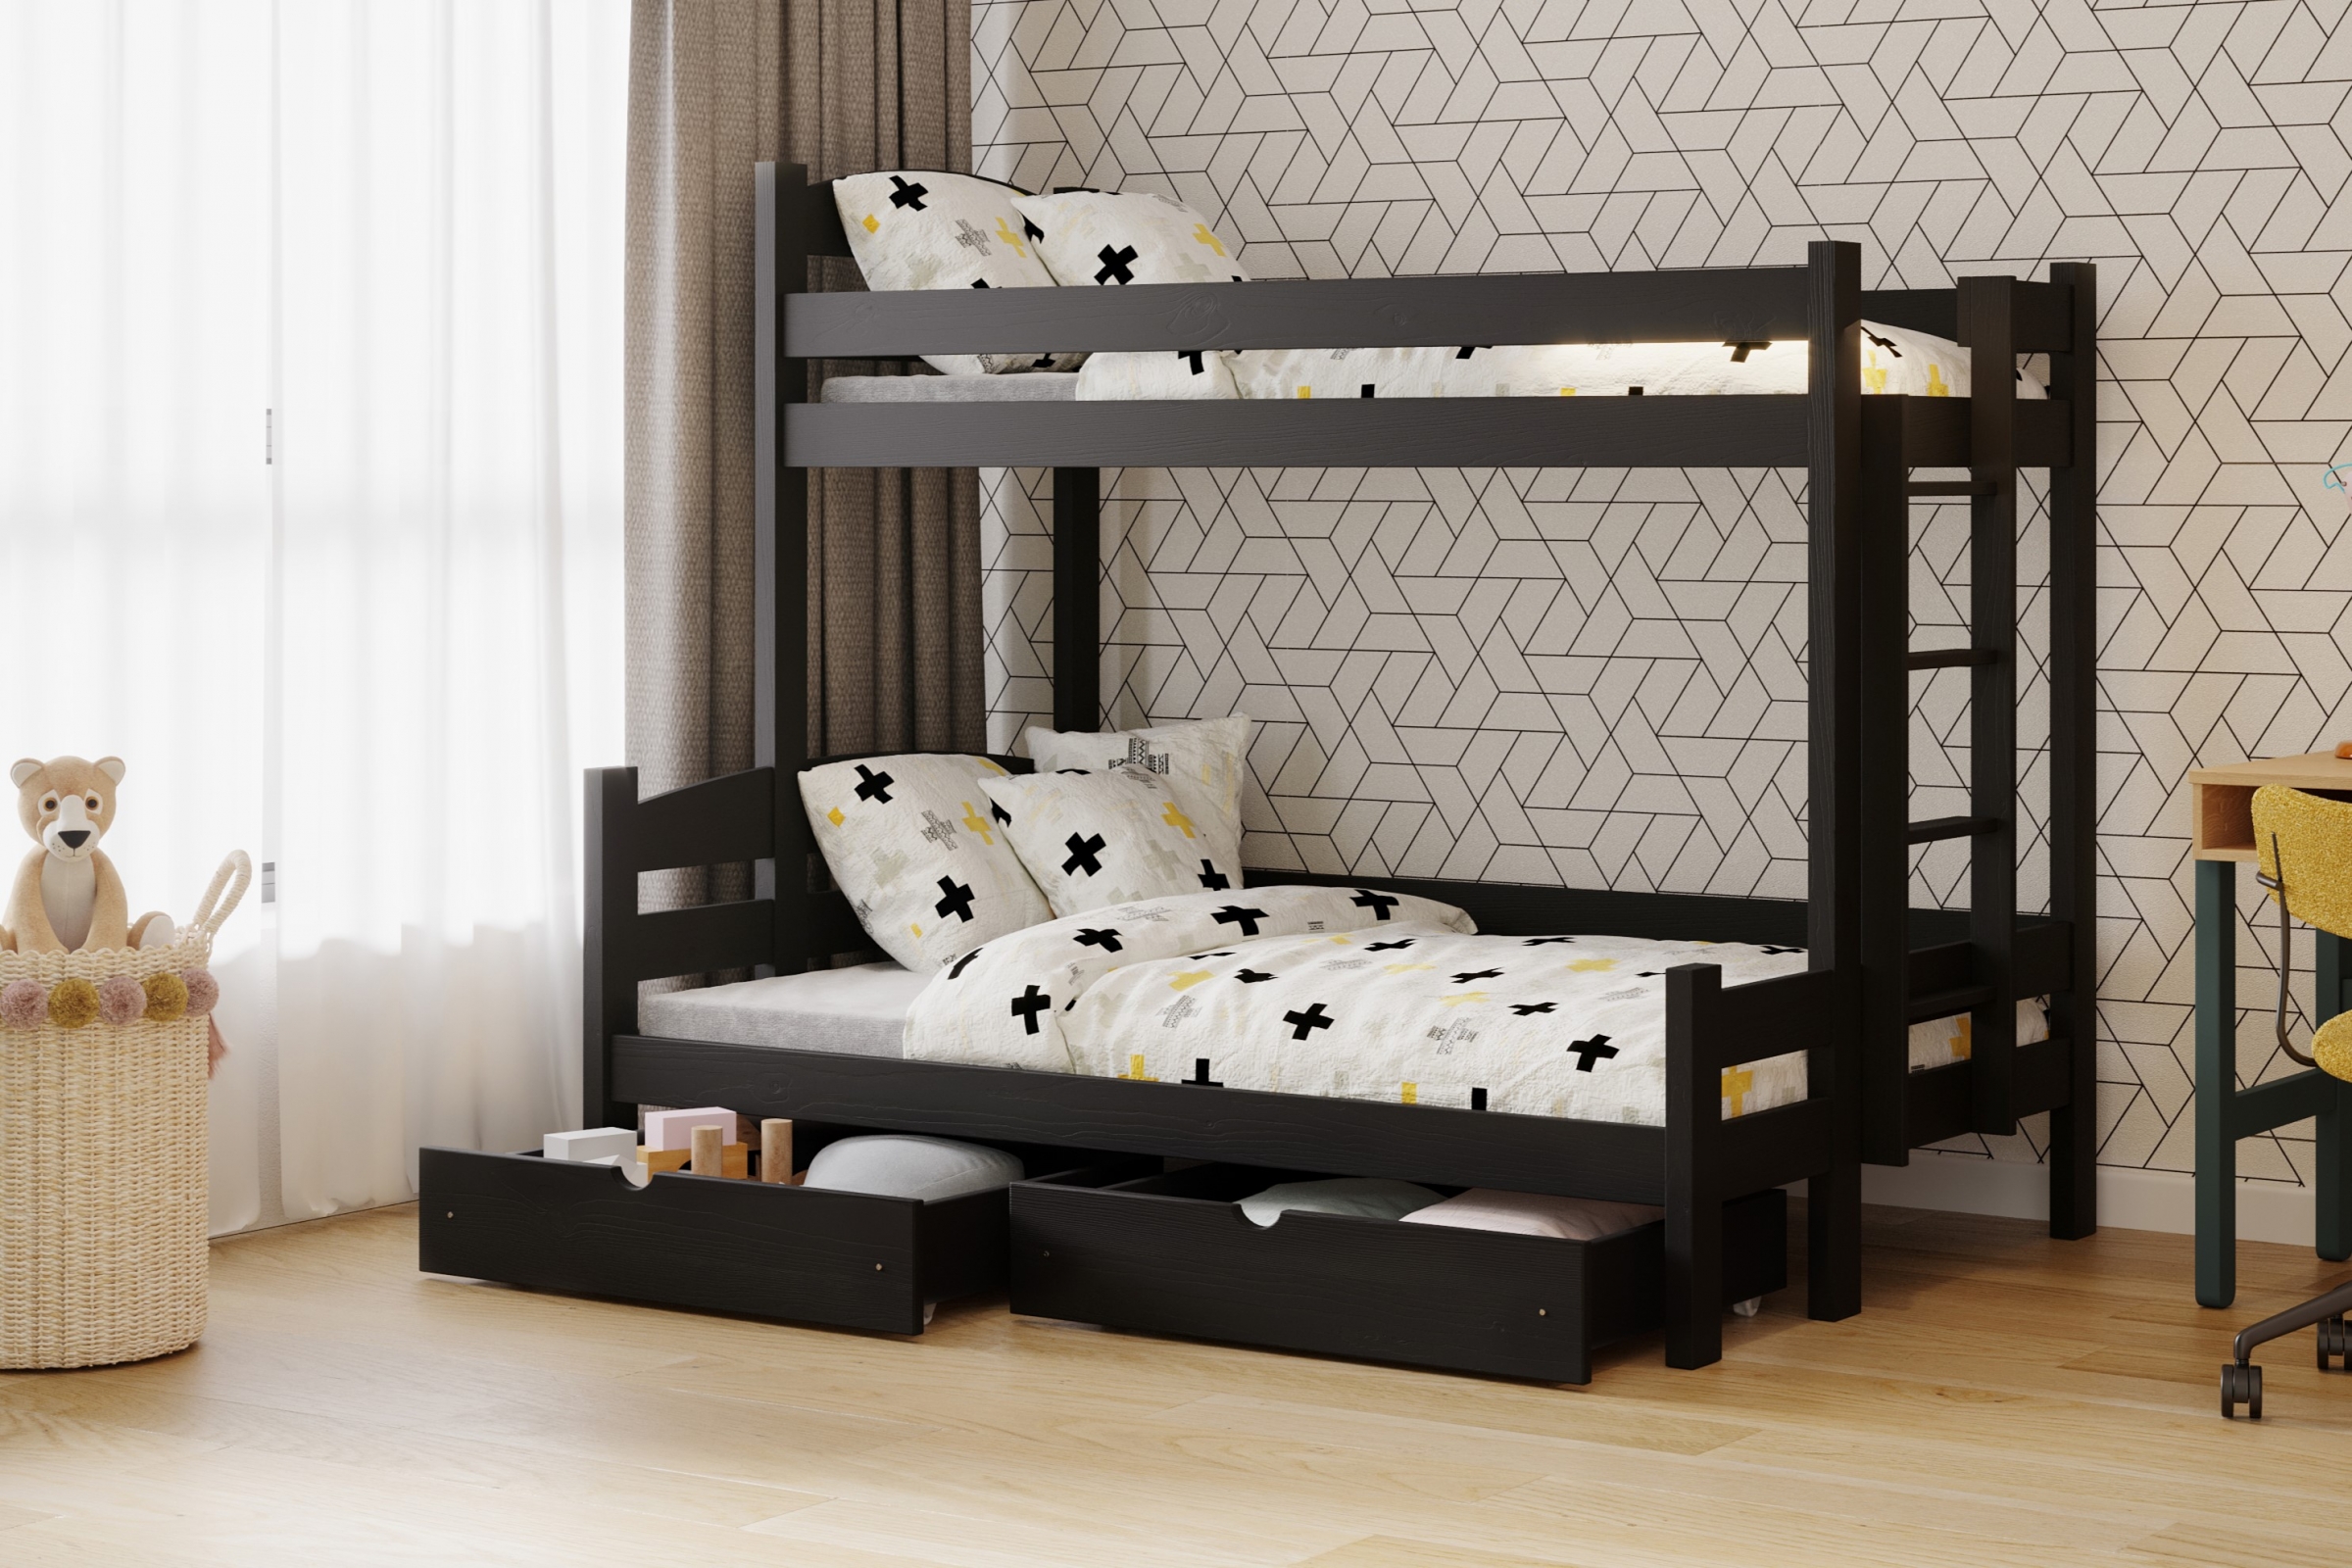 Lovic emeletes ágy, fiókokkal, bal oldali - 90x200 cm/120x200 cm - fekete Emeletes ágy fiokokkal Lovic - fekete - aranzacja